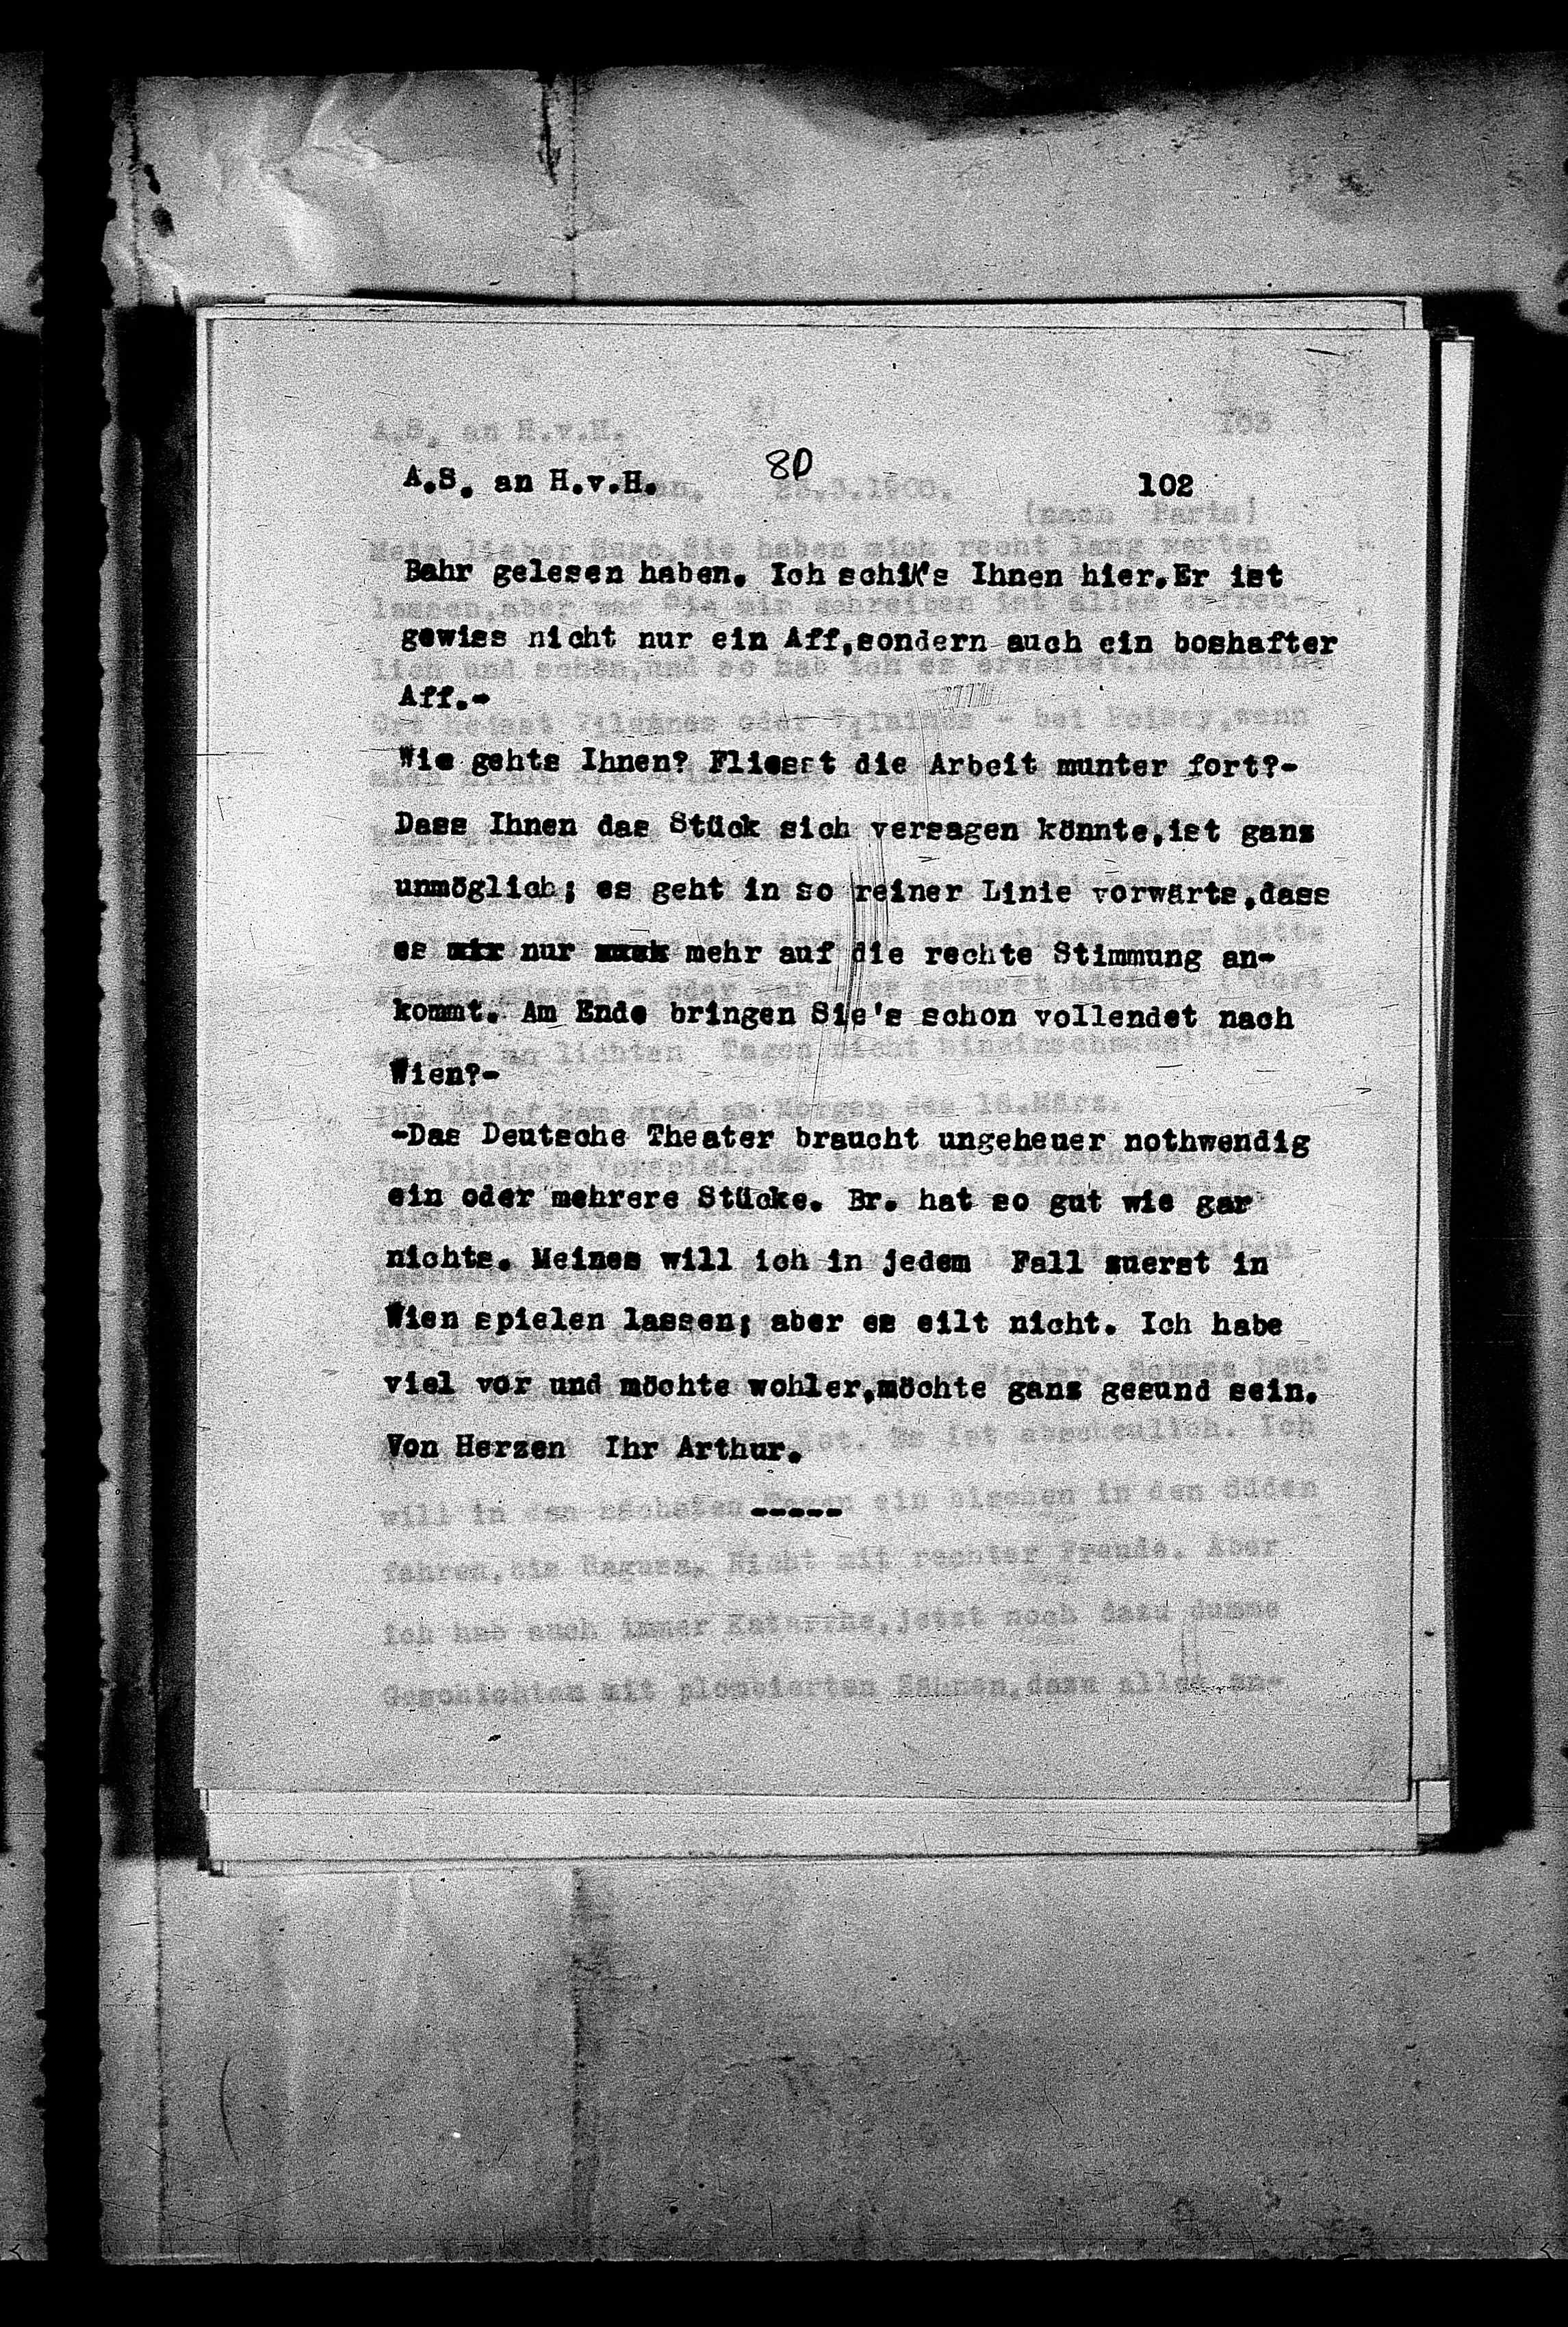 Vorschaubild für Hofmannsthal, Hugo von_AS an HvH Abschrift, HvH an AS, Originale (Mikrofilm 38), Seite 106